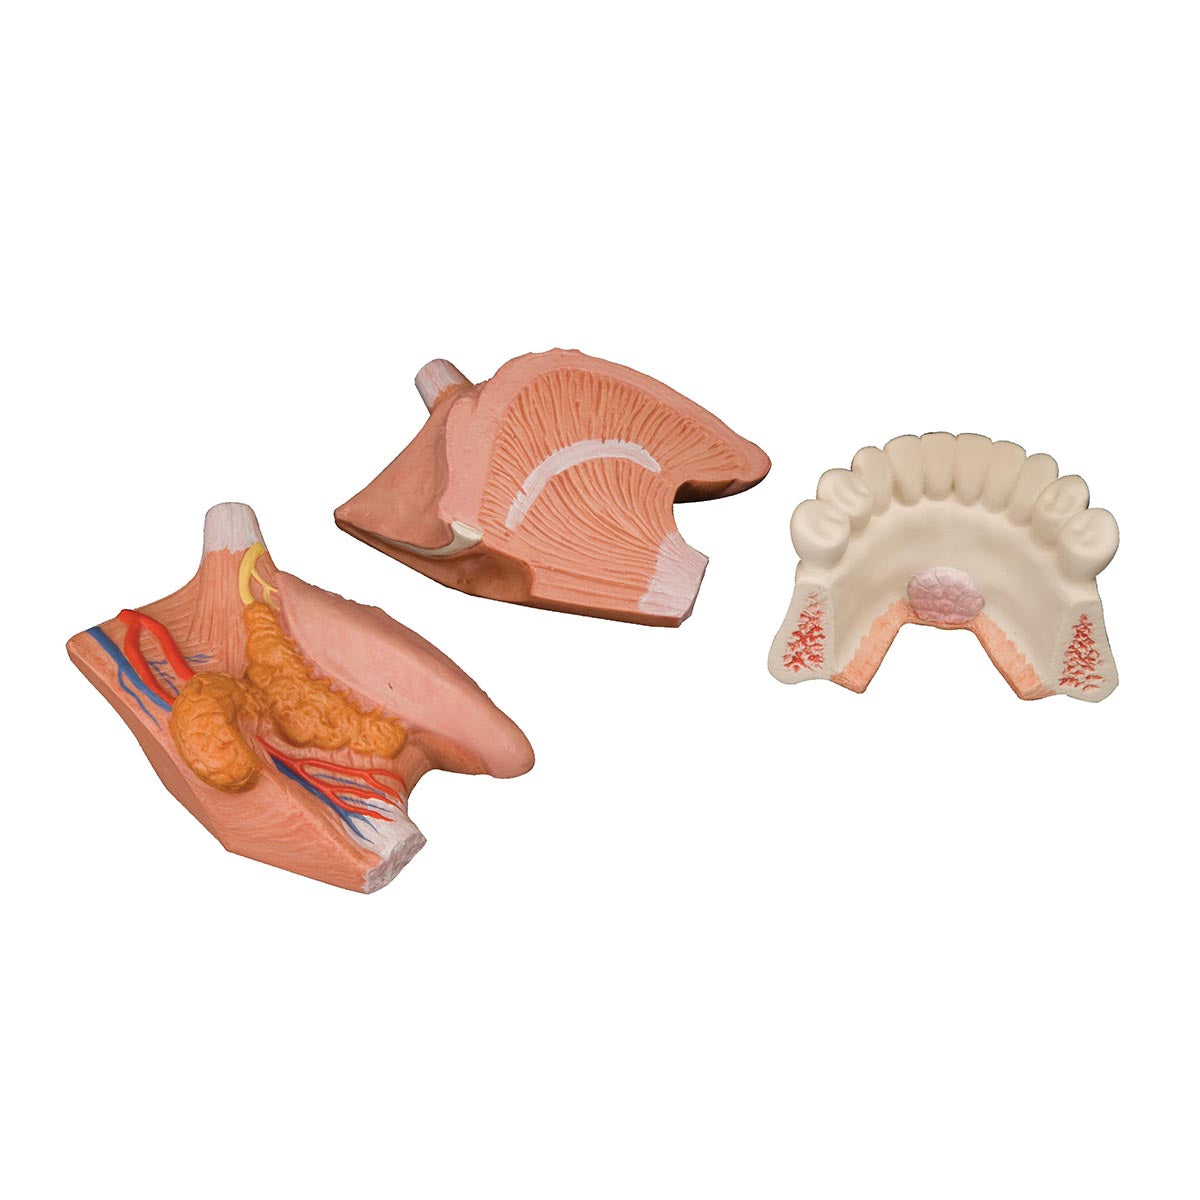 Forstørret tungemodel med papiller, 2 mundspytkirtler og lidt af under-kæben. Kan adskilles i flere dele